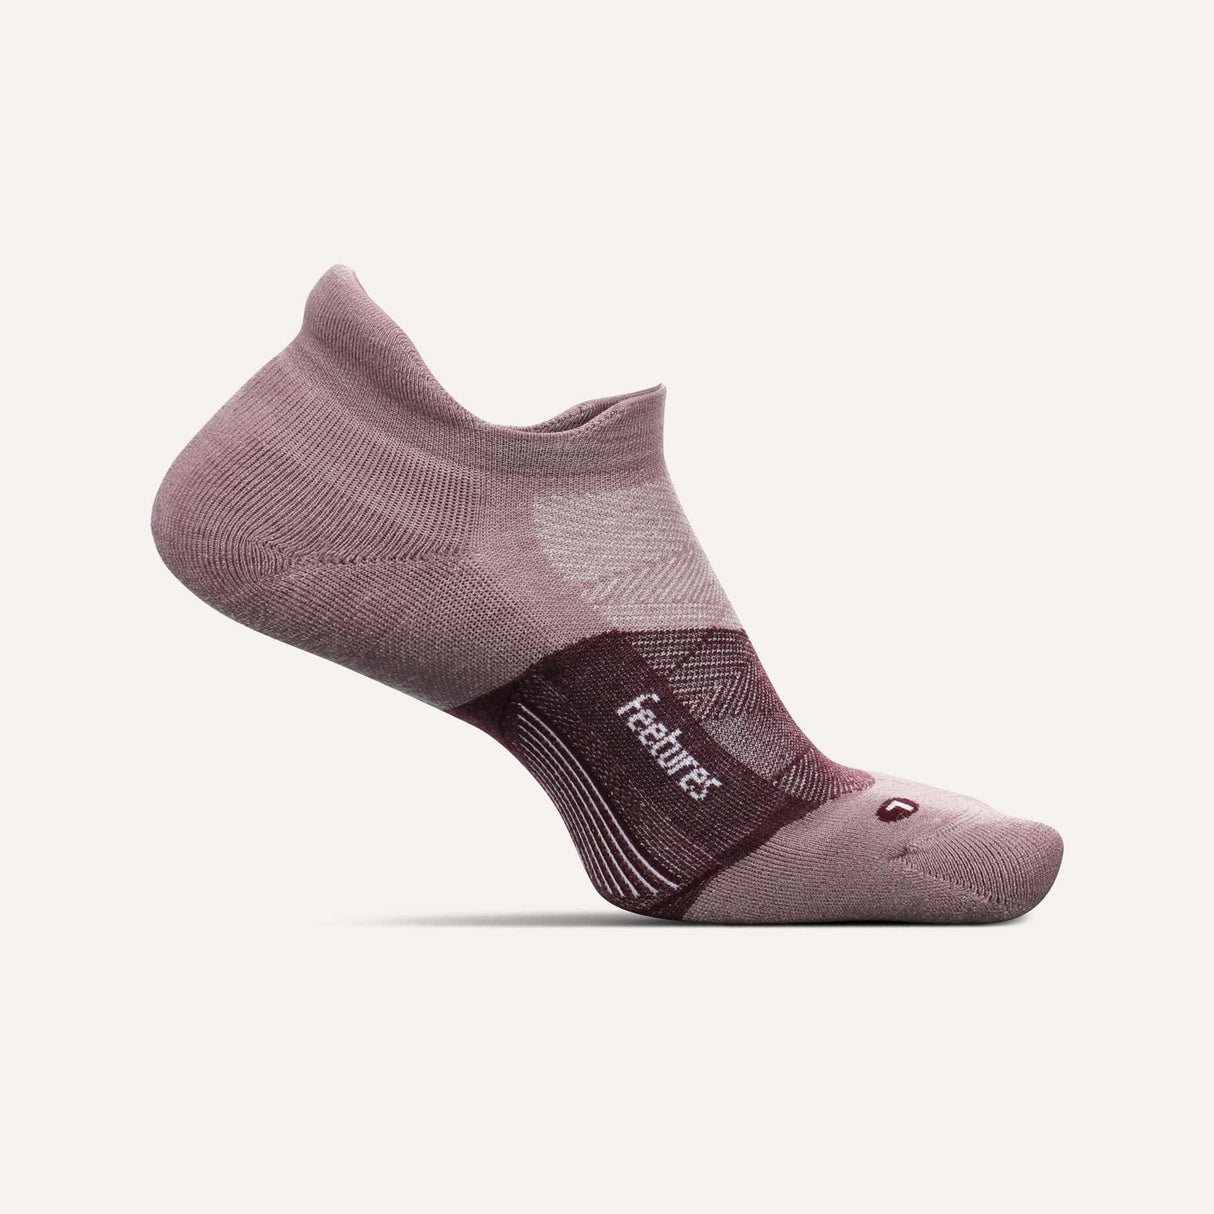 Feetures Merino 10 Cushion No Show Tab Socks  -  Small / Spiced